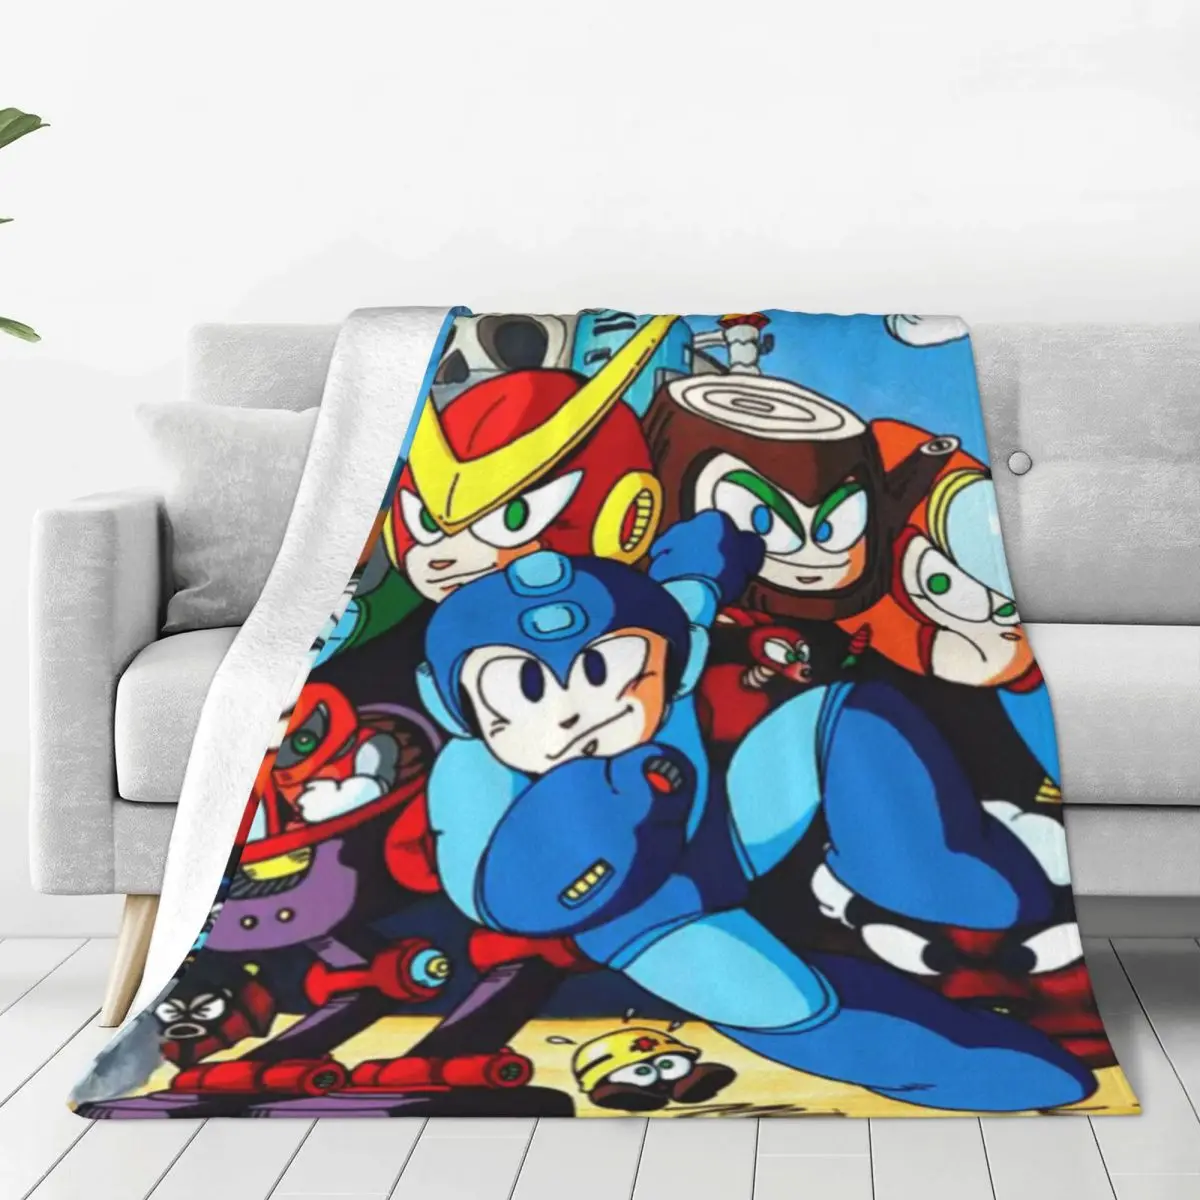 

Мягкое теплое одеяло Rockman Megaman, мультяшное постельное белье для путешествий, зимнее дизайнерское Фланелевое покрывало для дивана, кровати